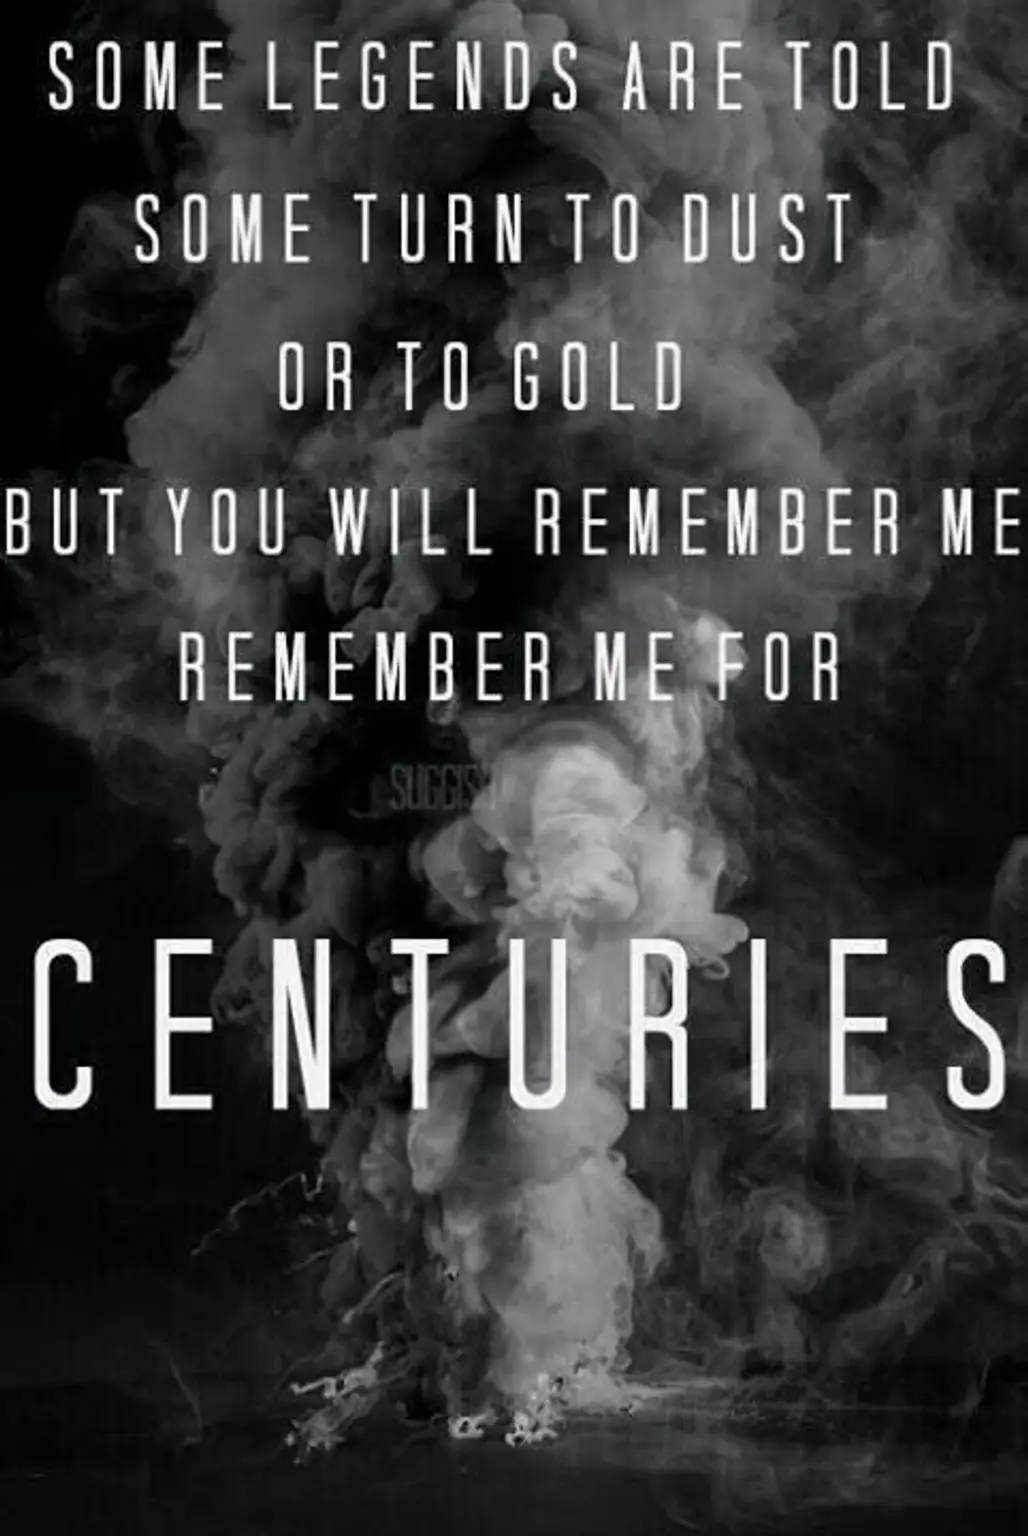 "centuries"